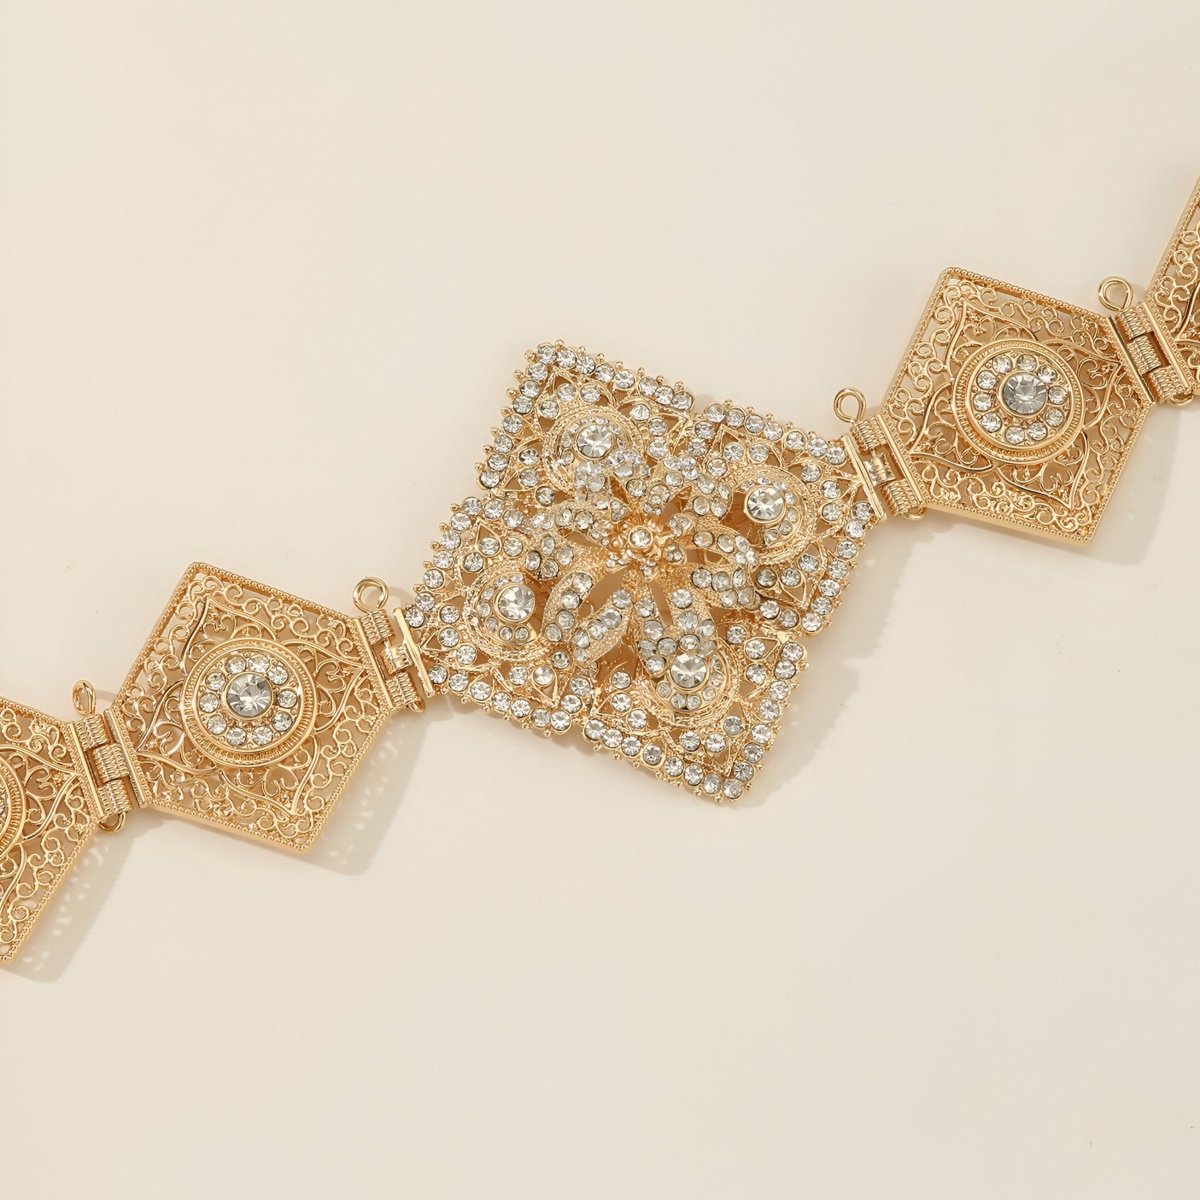 Ceinture marocaine d'un éclat doré et ornée de cristaux scintillants, modèle Serhane - La Boutique de la Ceinture